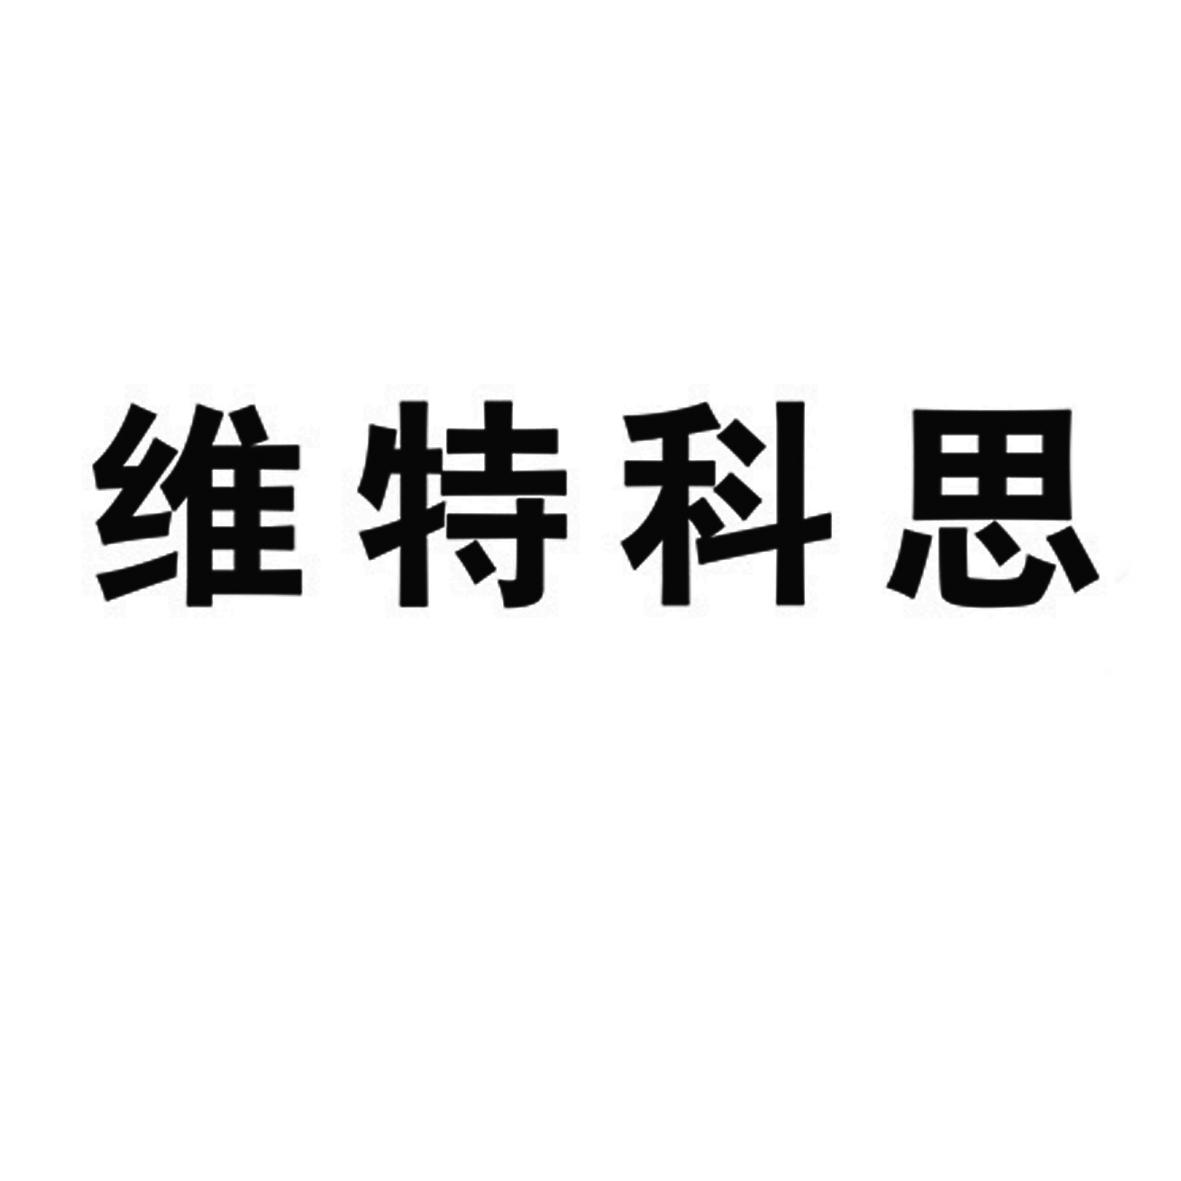 維特科思-832931-武漢維特科思教育股份有限公司